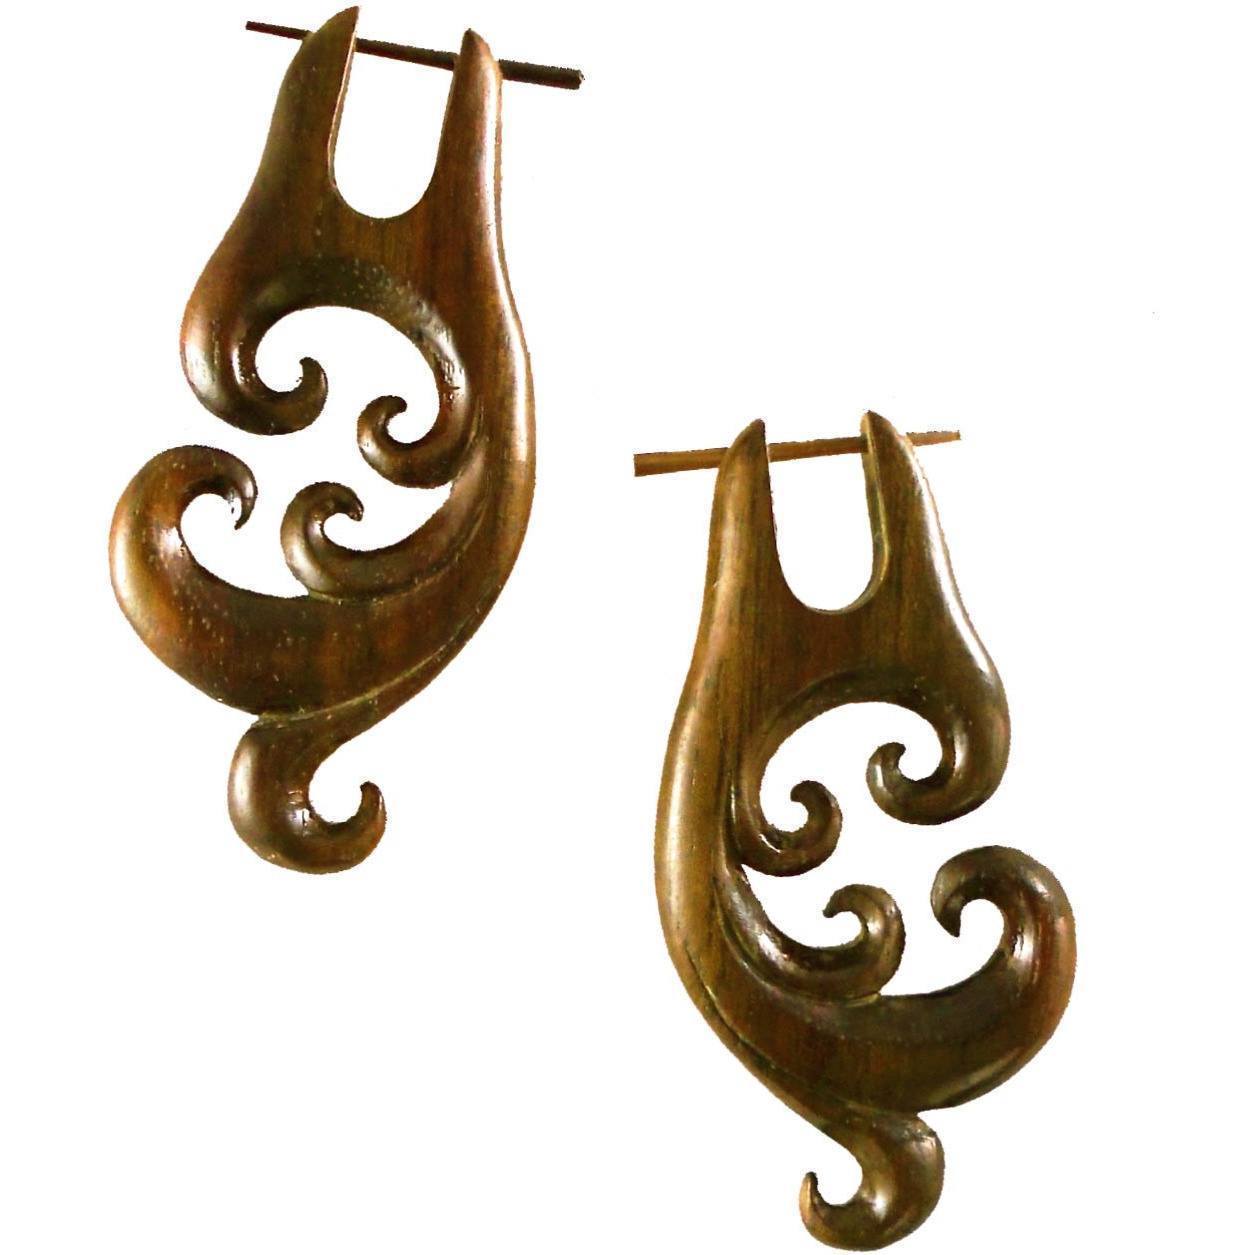 Natural Jewelry :|: Spectral Swirl, Rosewood Earrings. 1 inch W x 2 1/4 inch L. | Wood Earrings